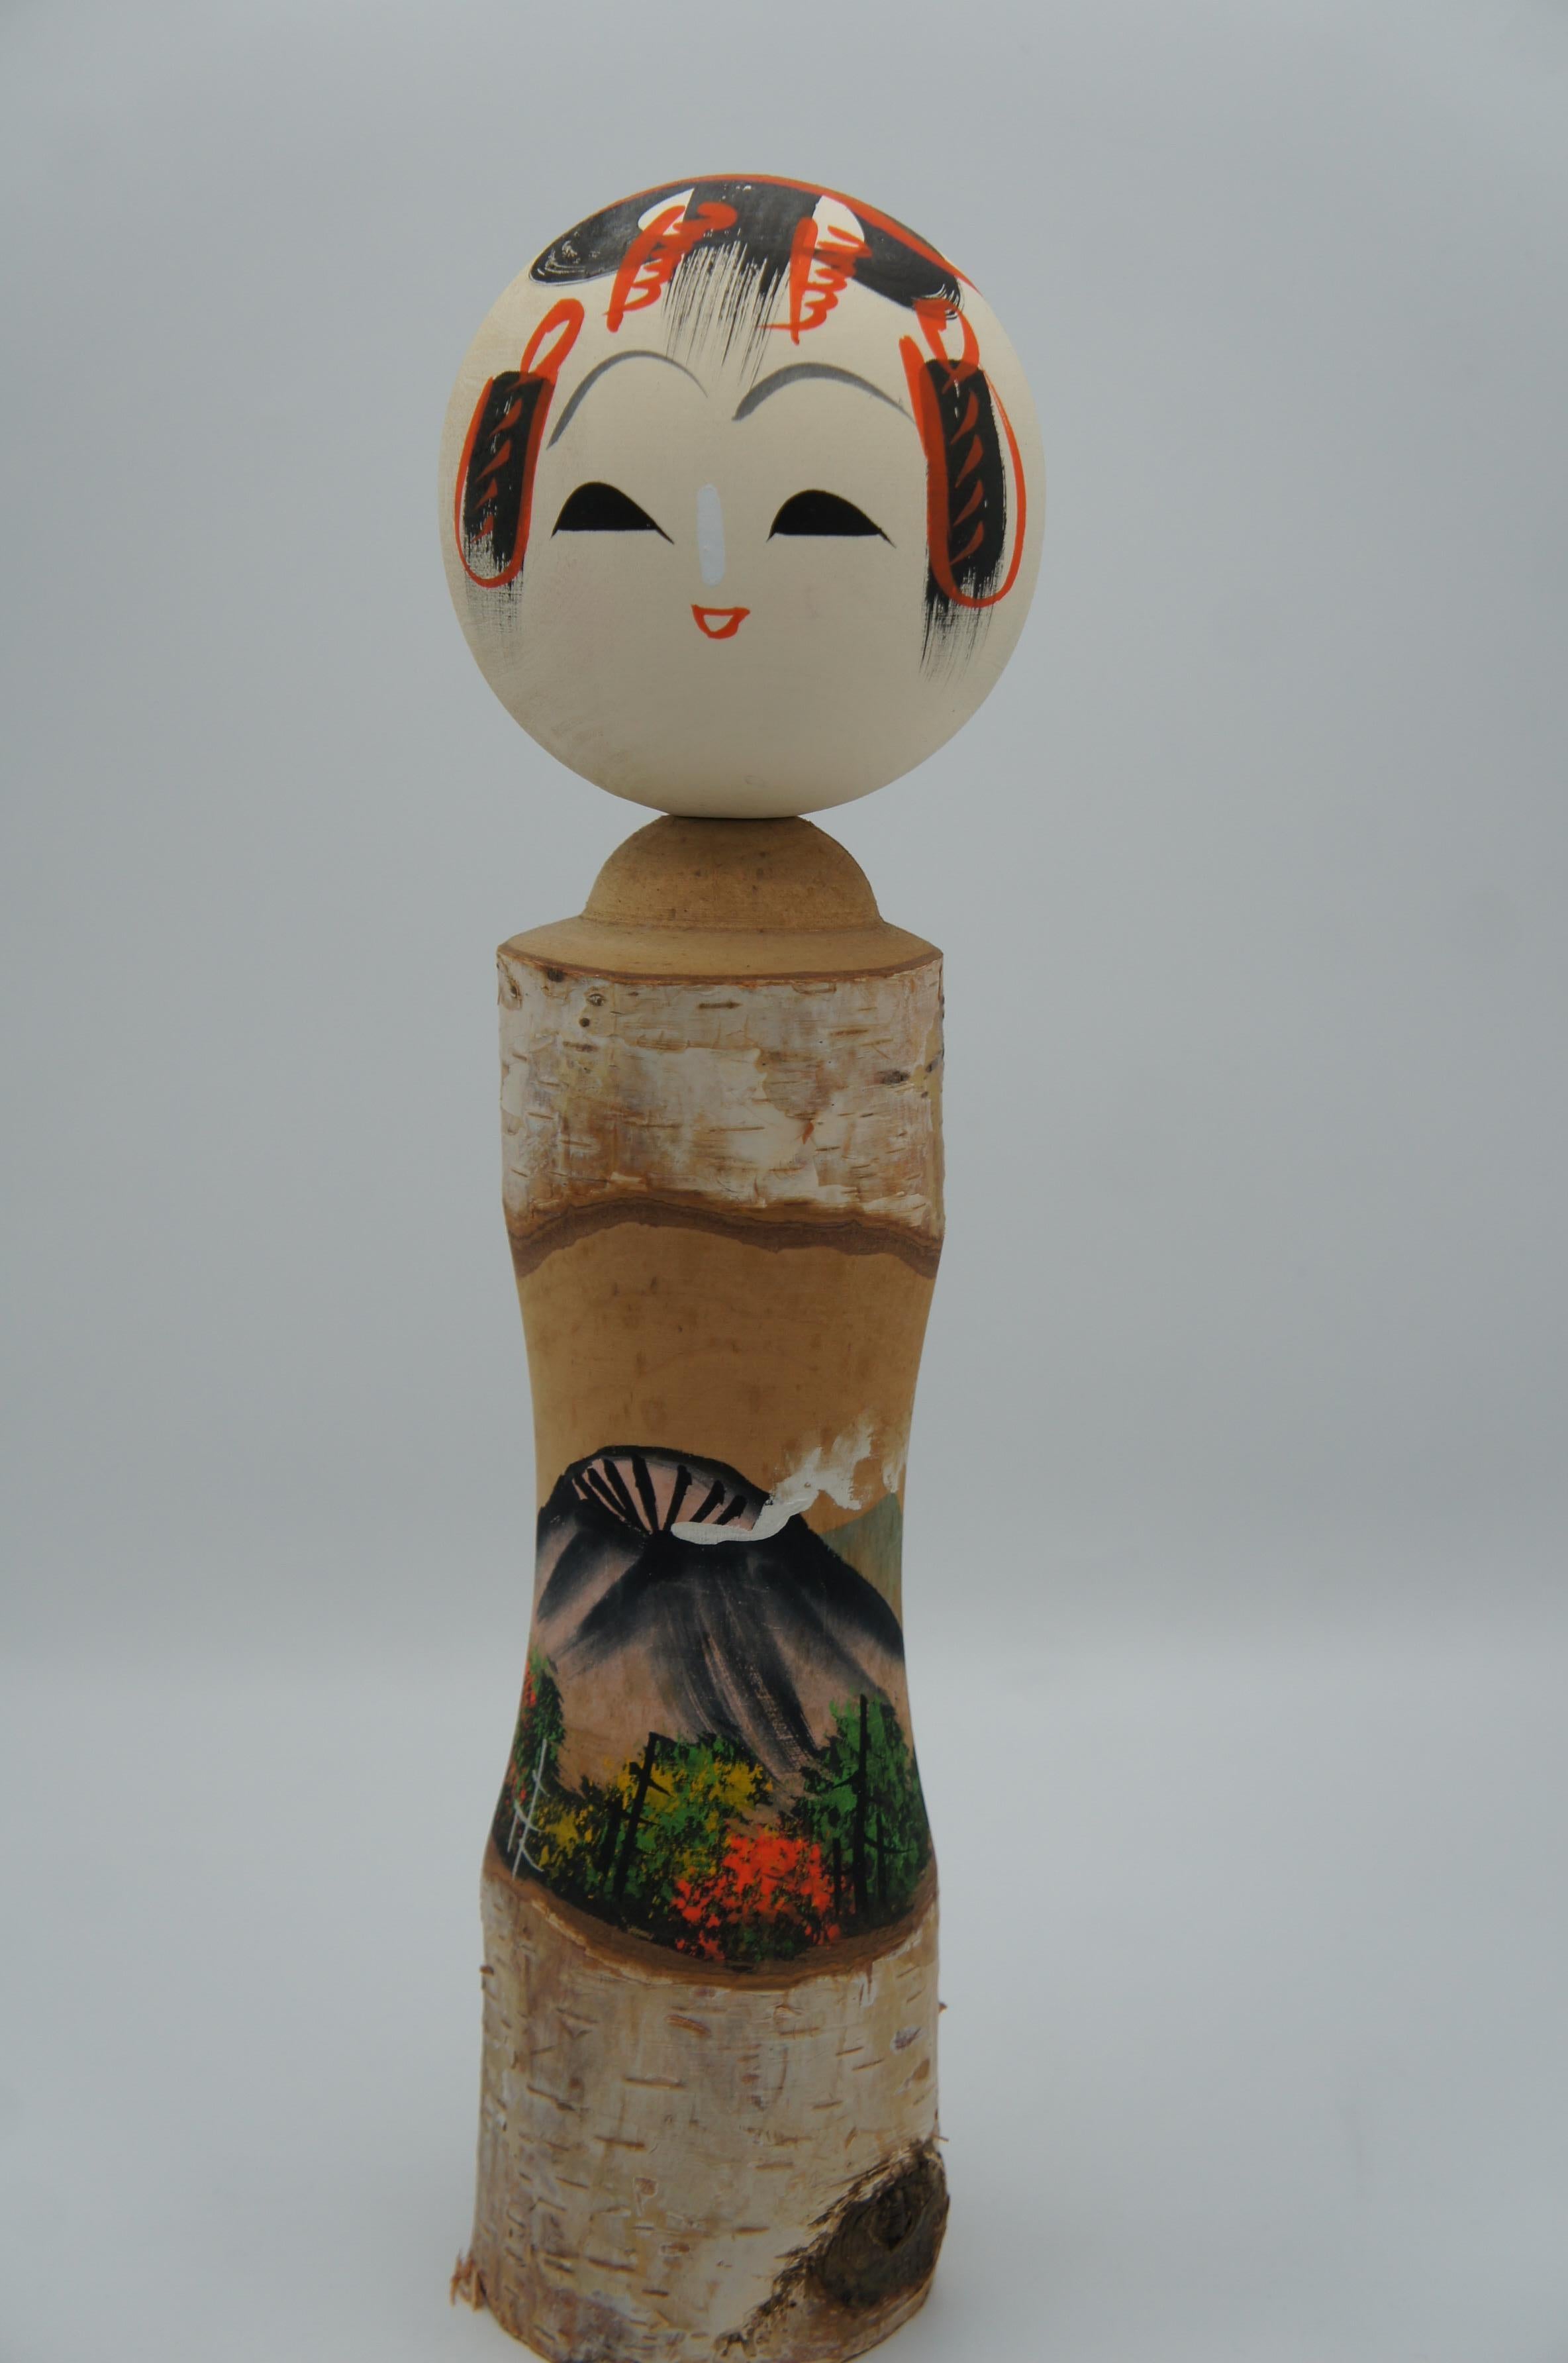 Dies ist eine hölzerne Kokeshi-Puppe, die in den 1980er Jahren in der Showa-Ära hergestellt wurde.
Es wurde in der Präfektur Nagano in Japan hergestellt.
Das Holz ist eine Weißbirke. 

Betula platyphylla, die asiatische Weißbirke oder japanische